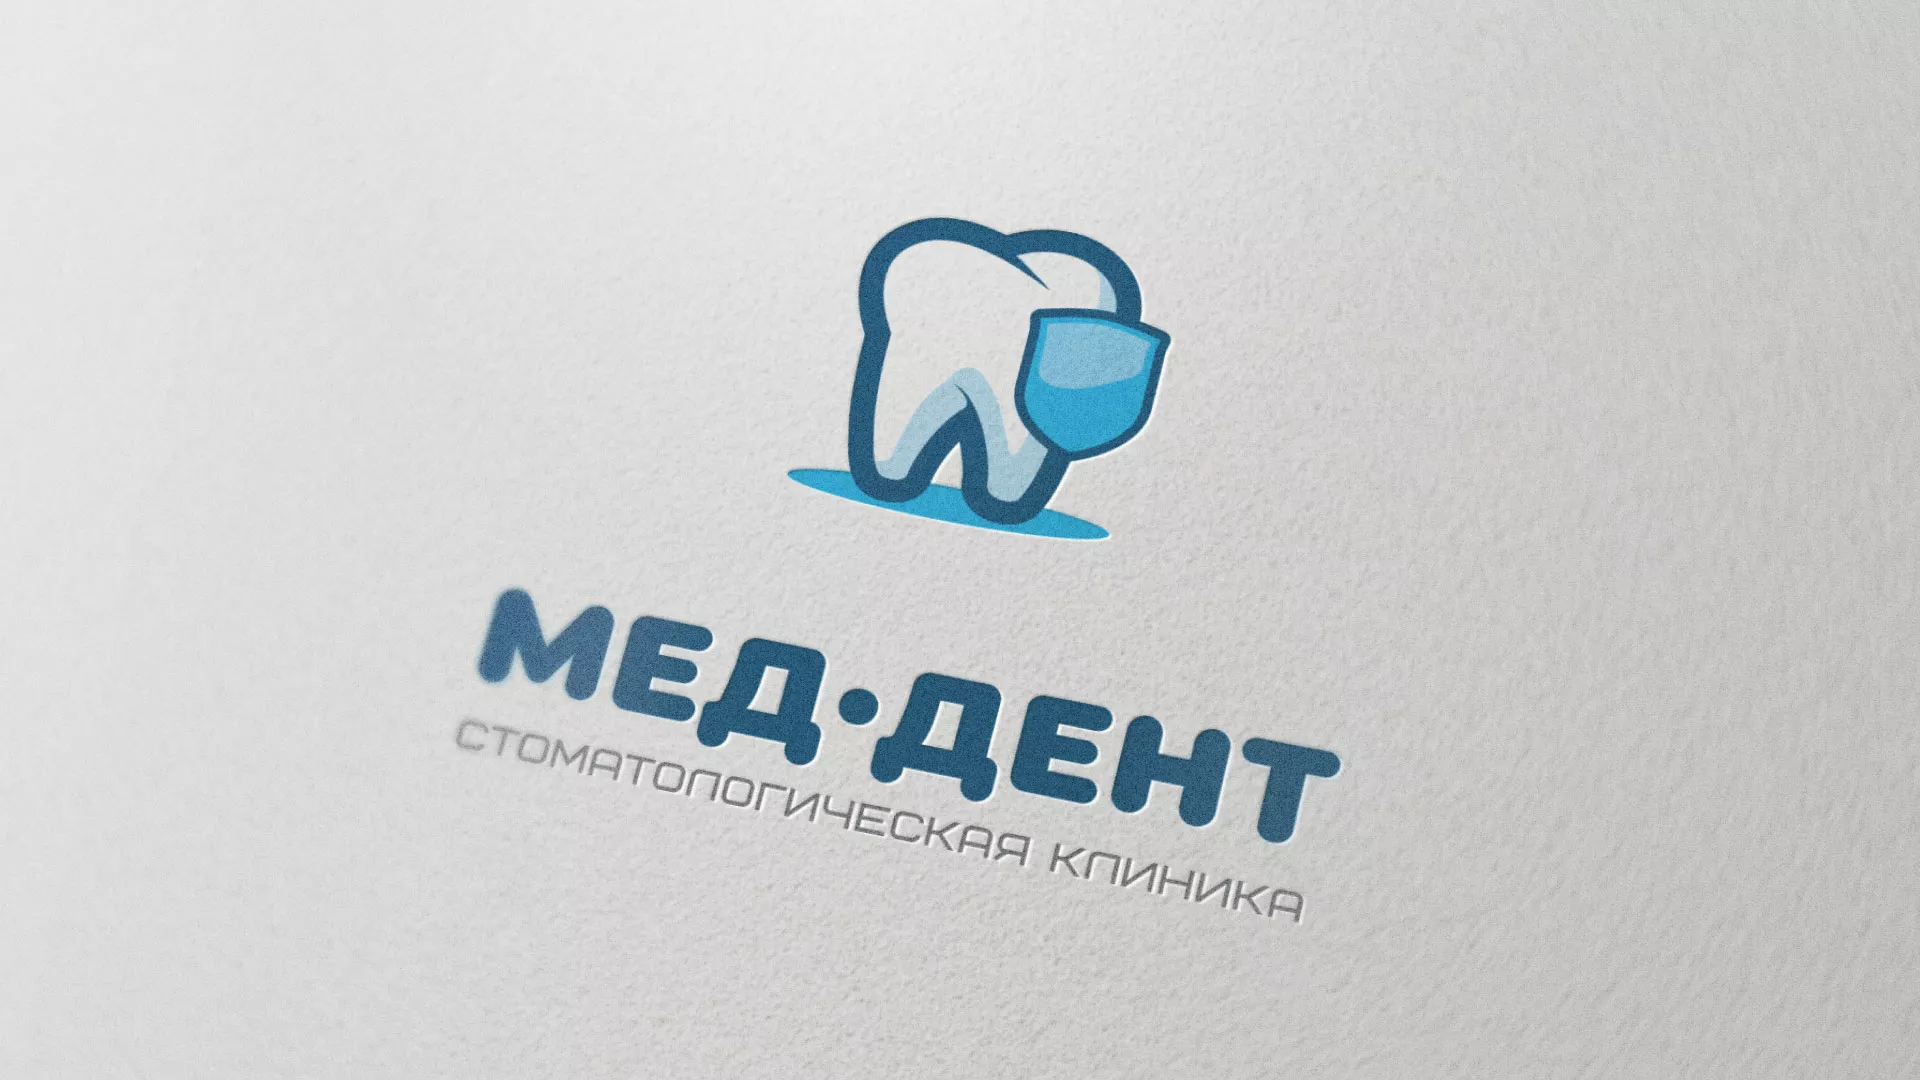 Разработка логотипа стоматологической клиники «МЕД-ДЕНТ» в Шахунье